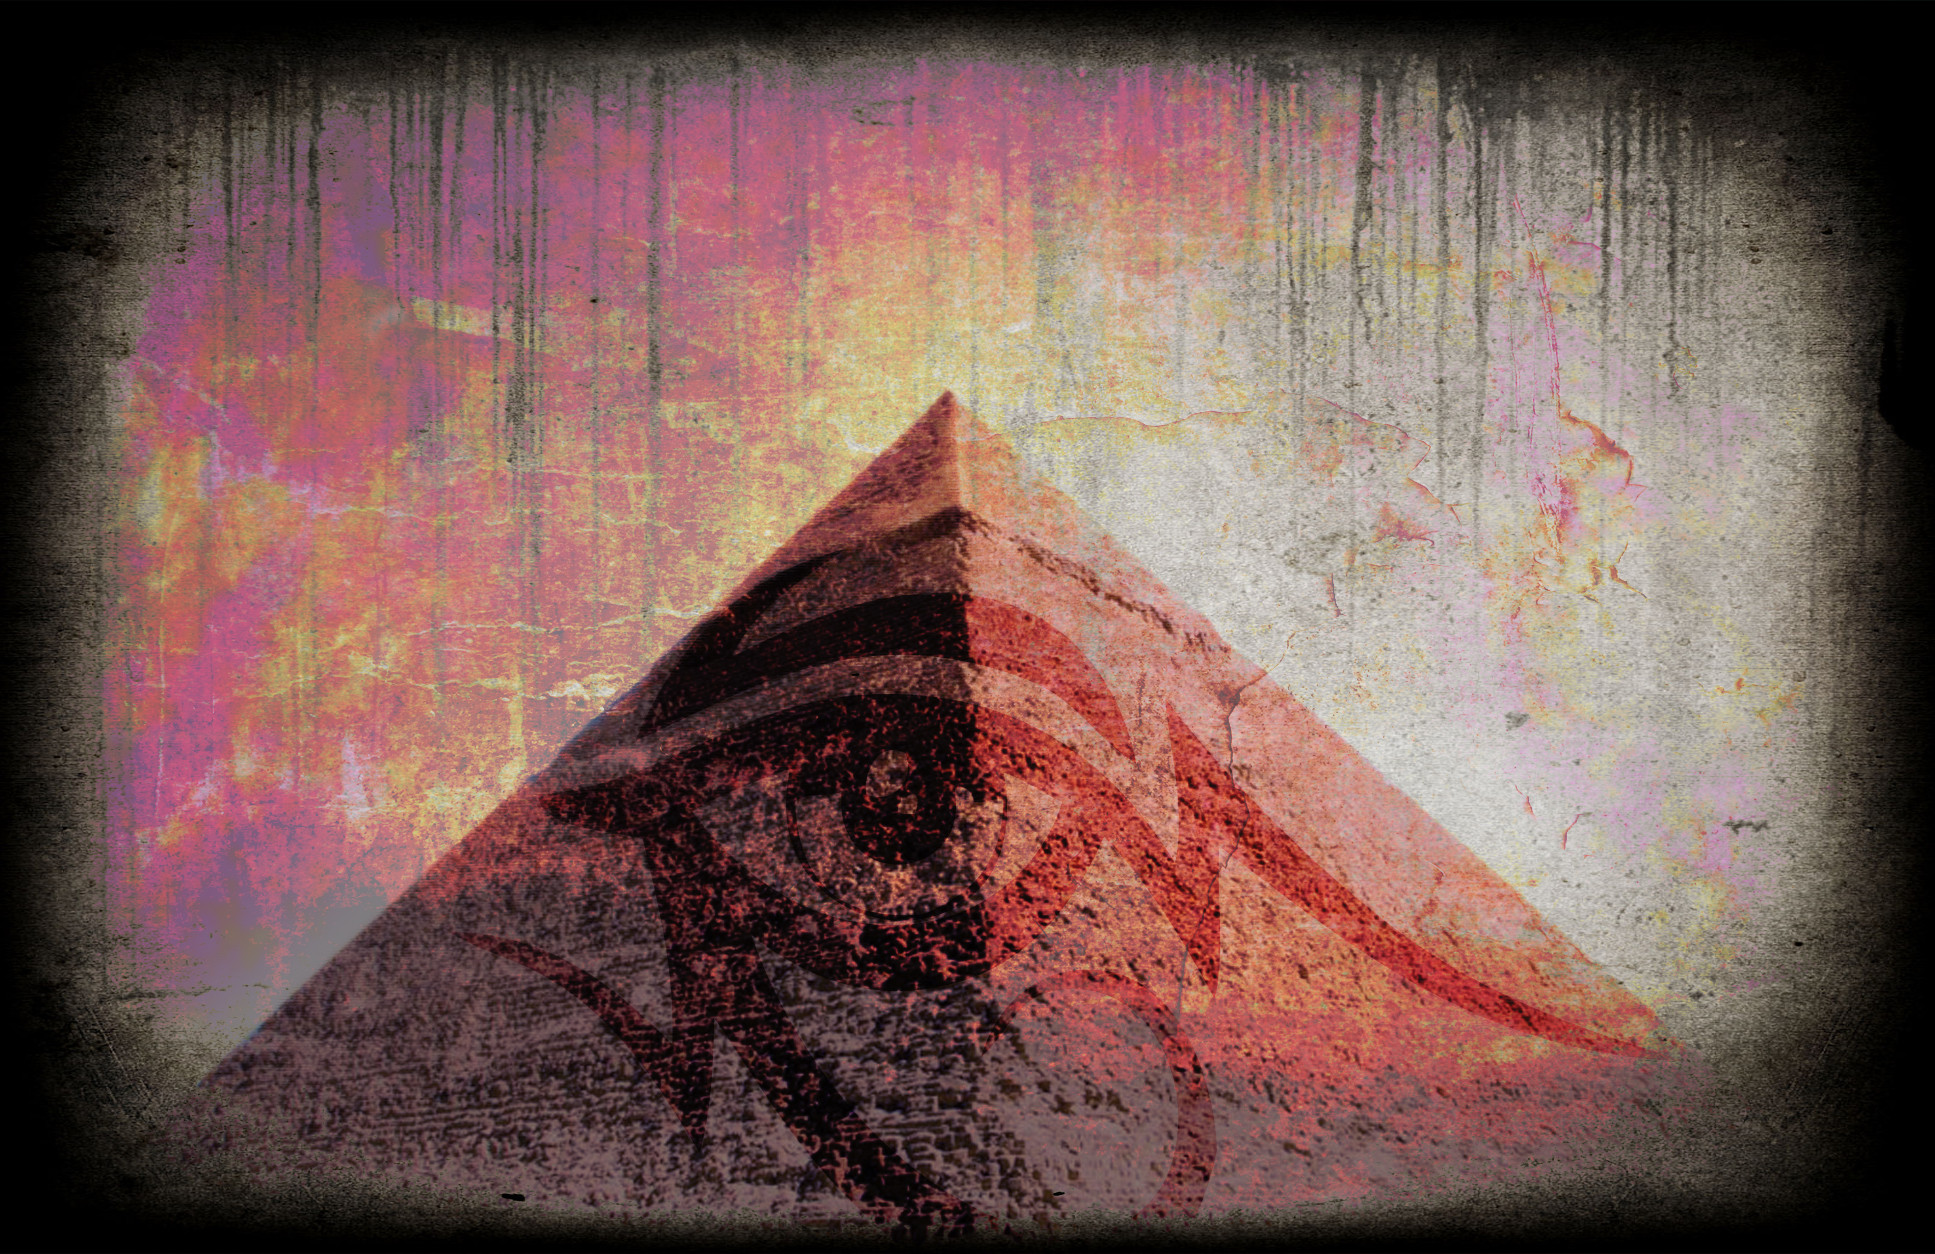 1935x1254 Illuminati wallpaper by G-dugz Illuminati wallpaper by G-dugz